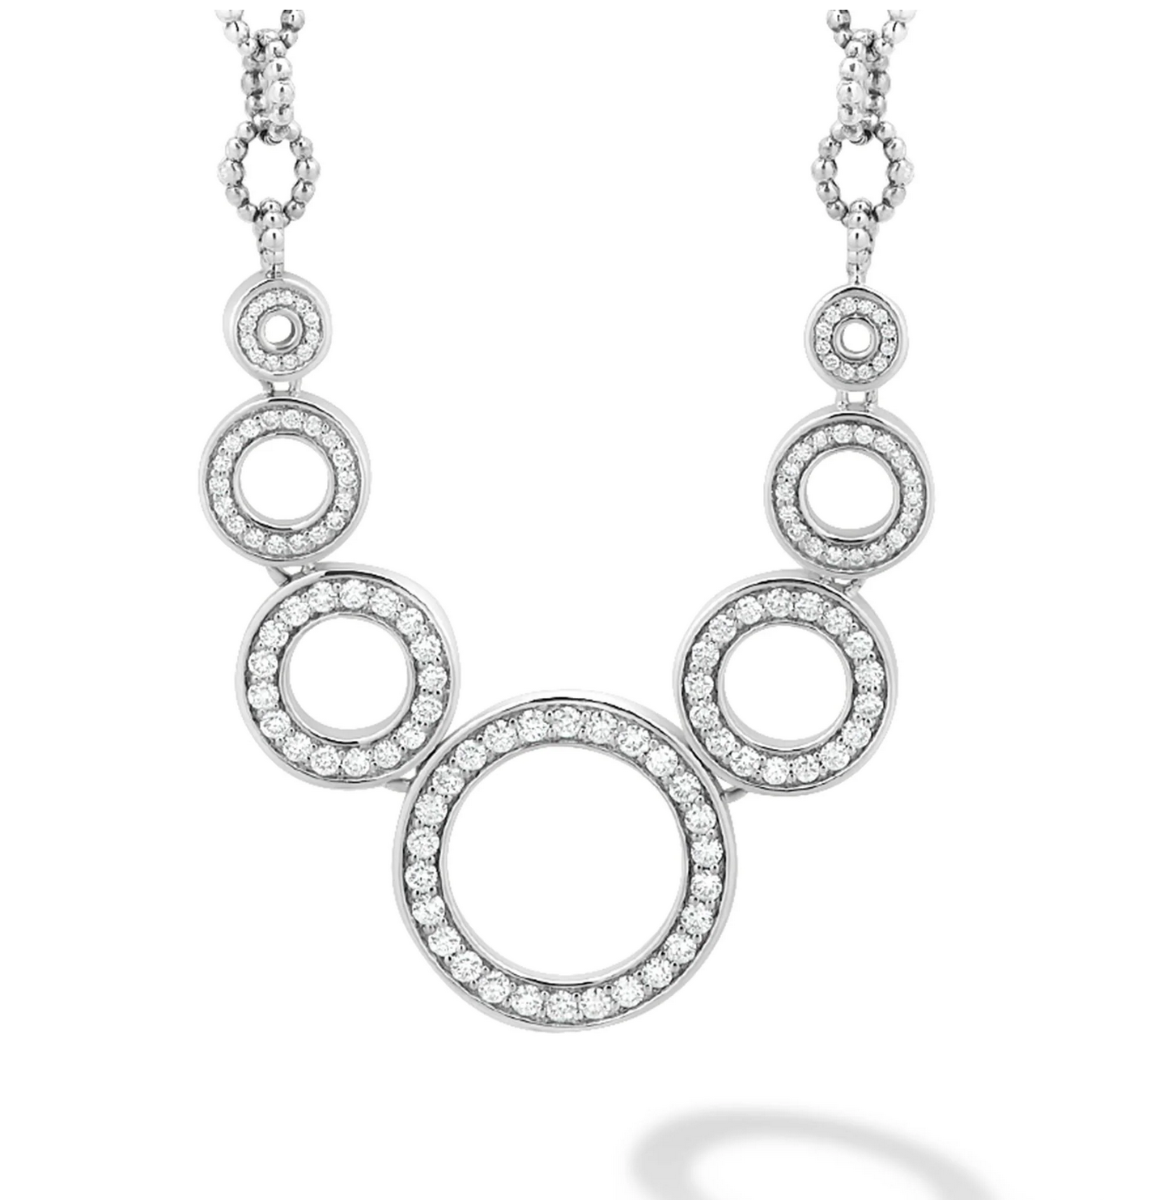 LAGOS "Caviar Spark" Seven Circle Diamond Link Necklace